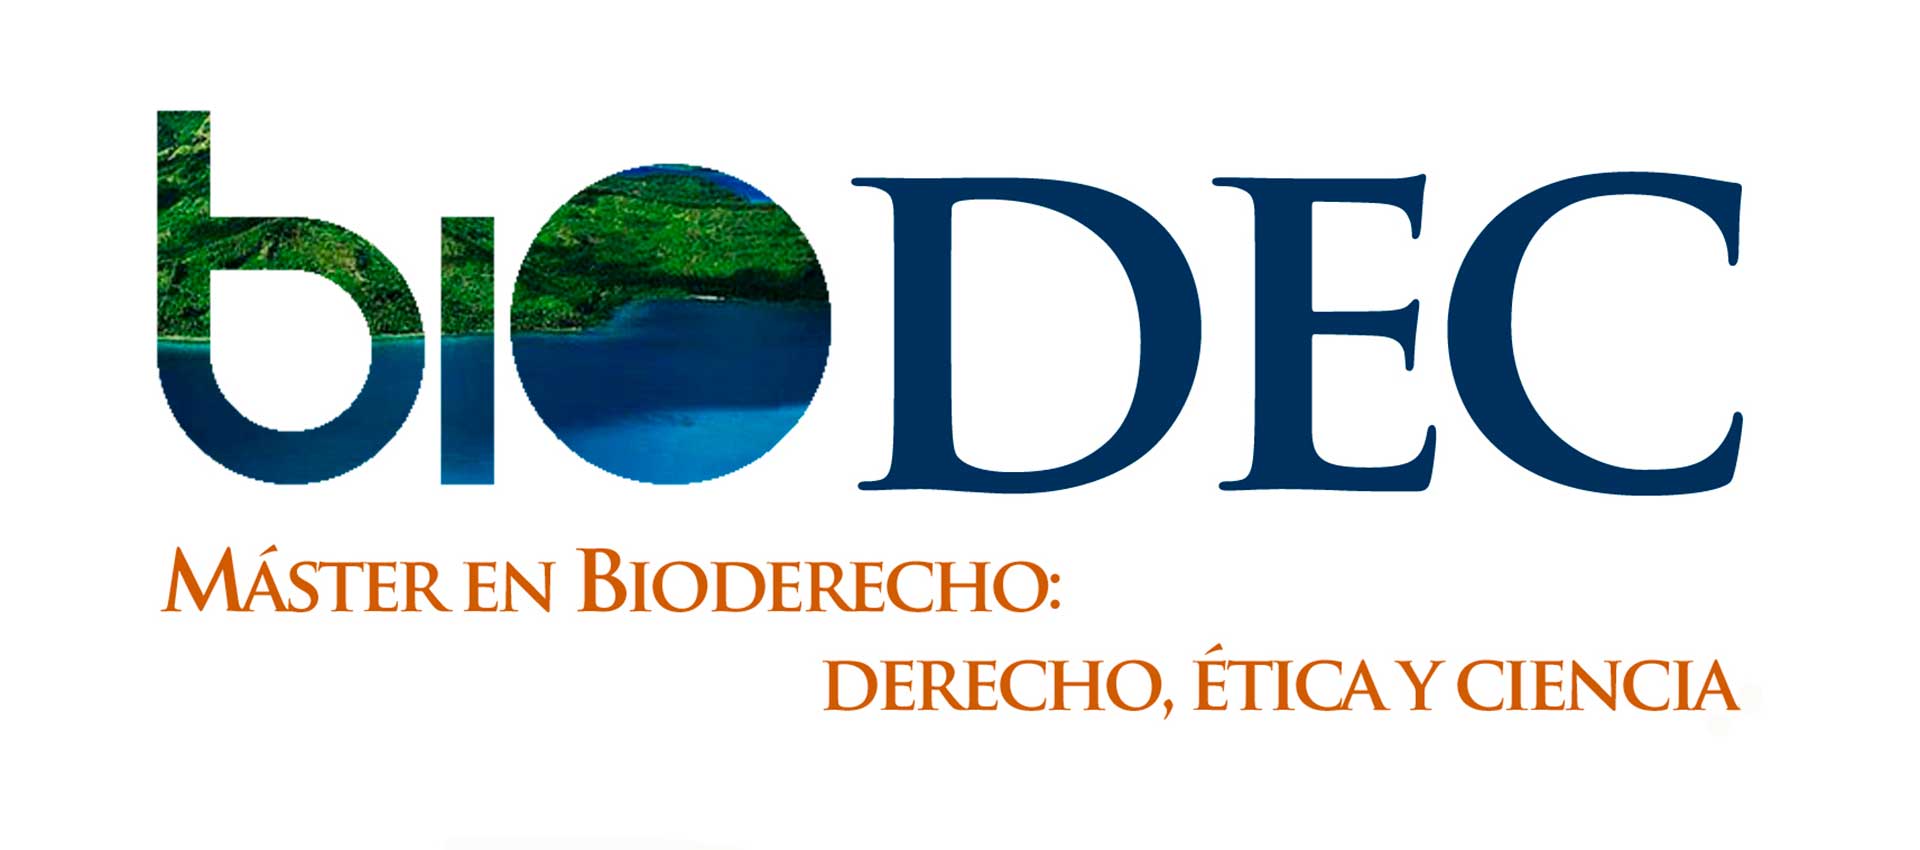 BIODEC: Máster en Bioderecho, Ética y Ciencia 